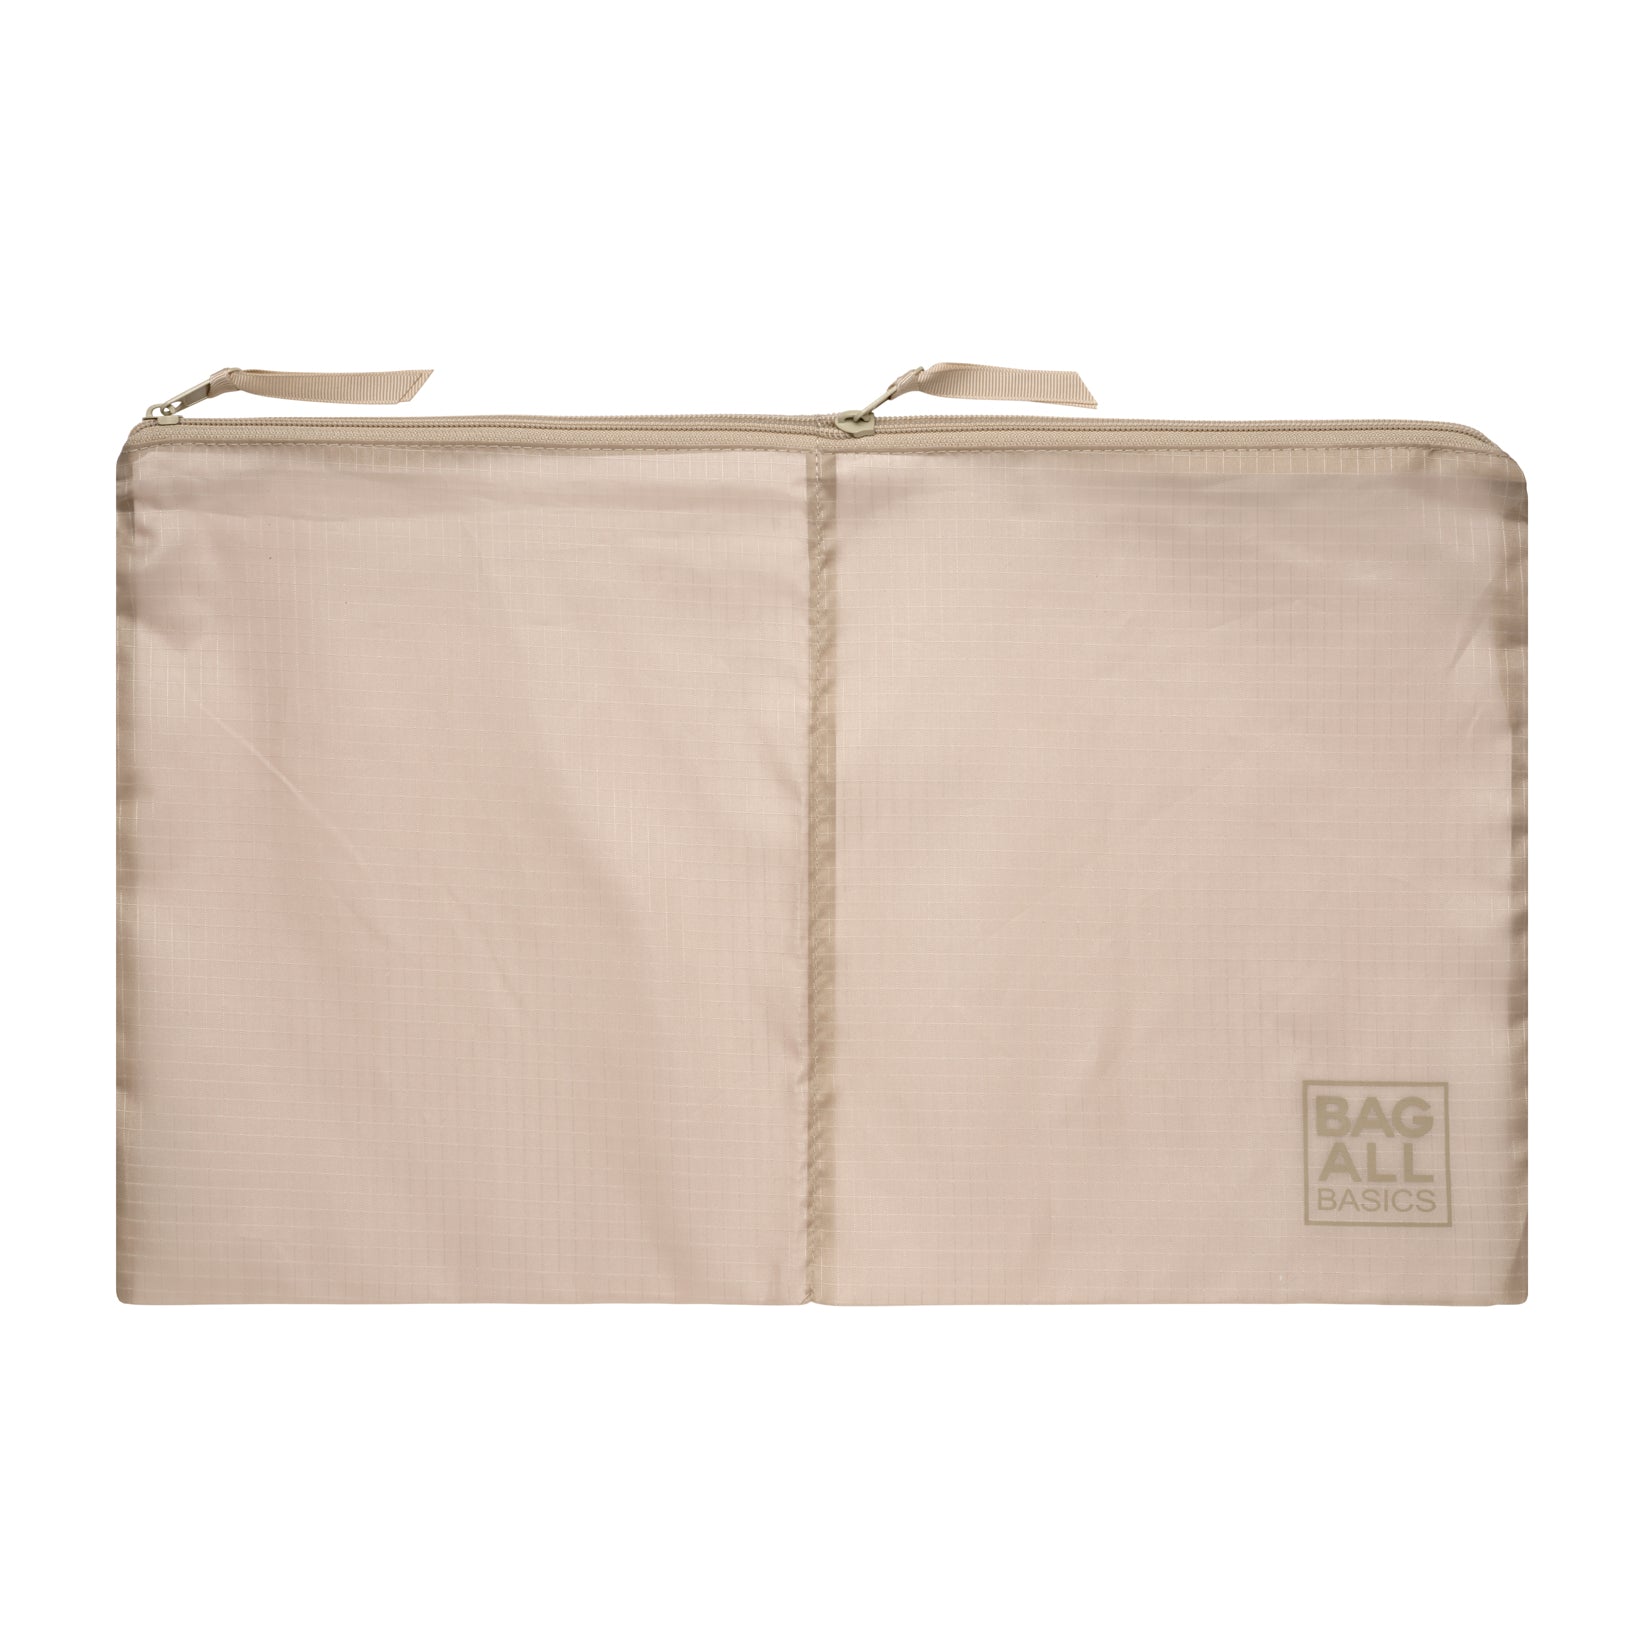 Bag-all Basic Sacs d’organisation, Taupe, Pack de 8 | Bag-all